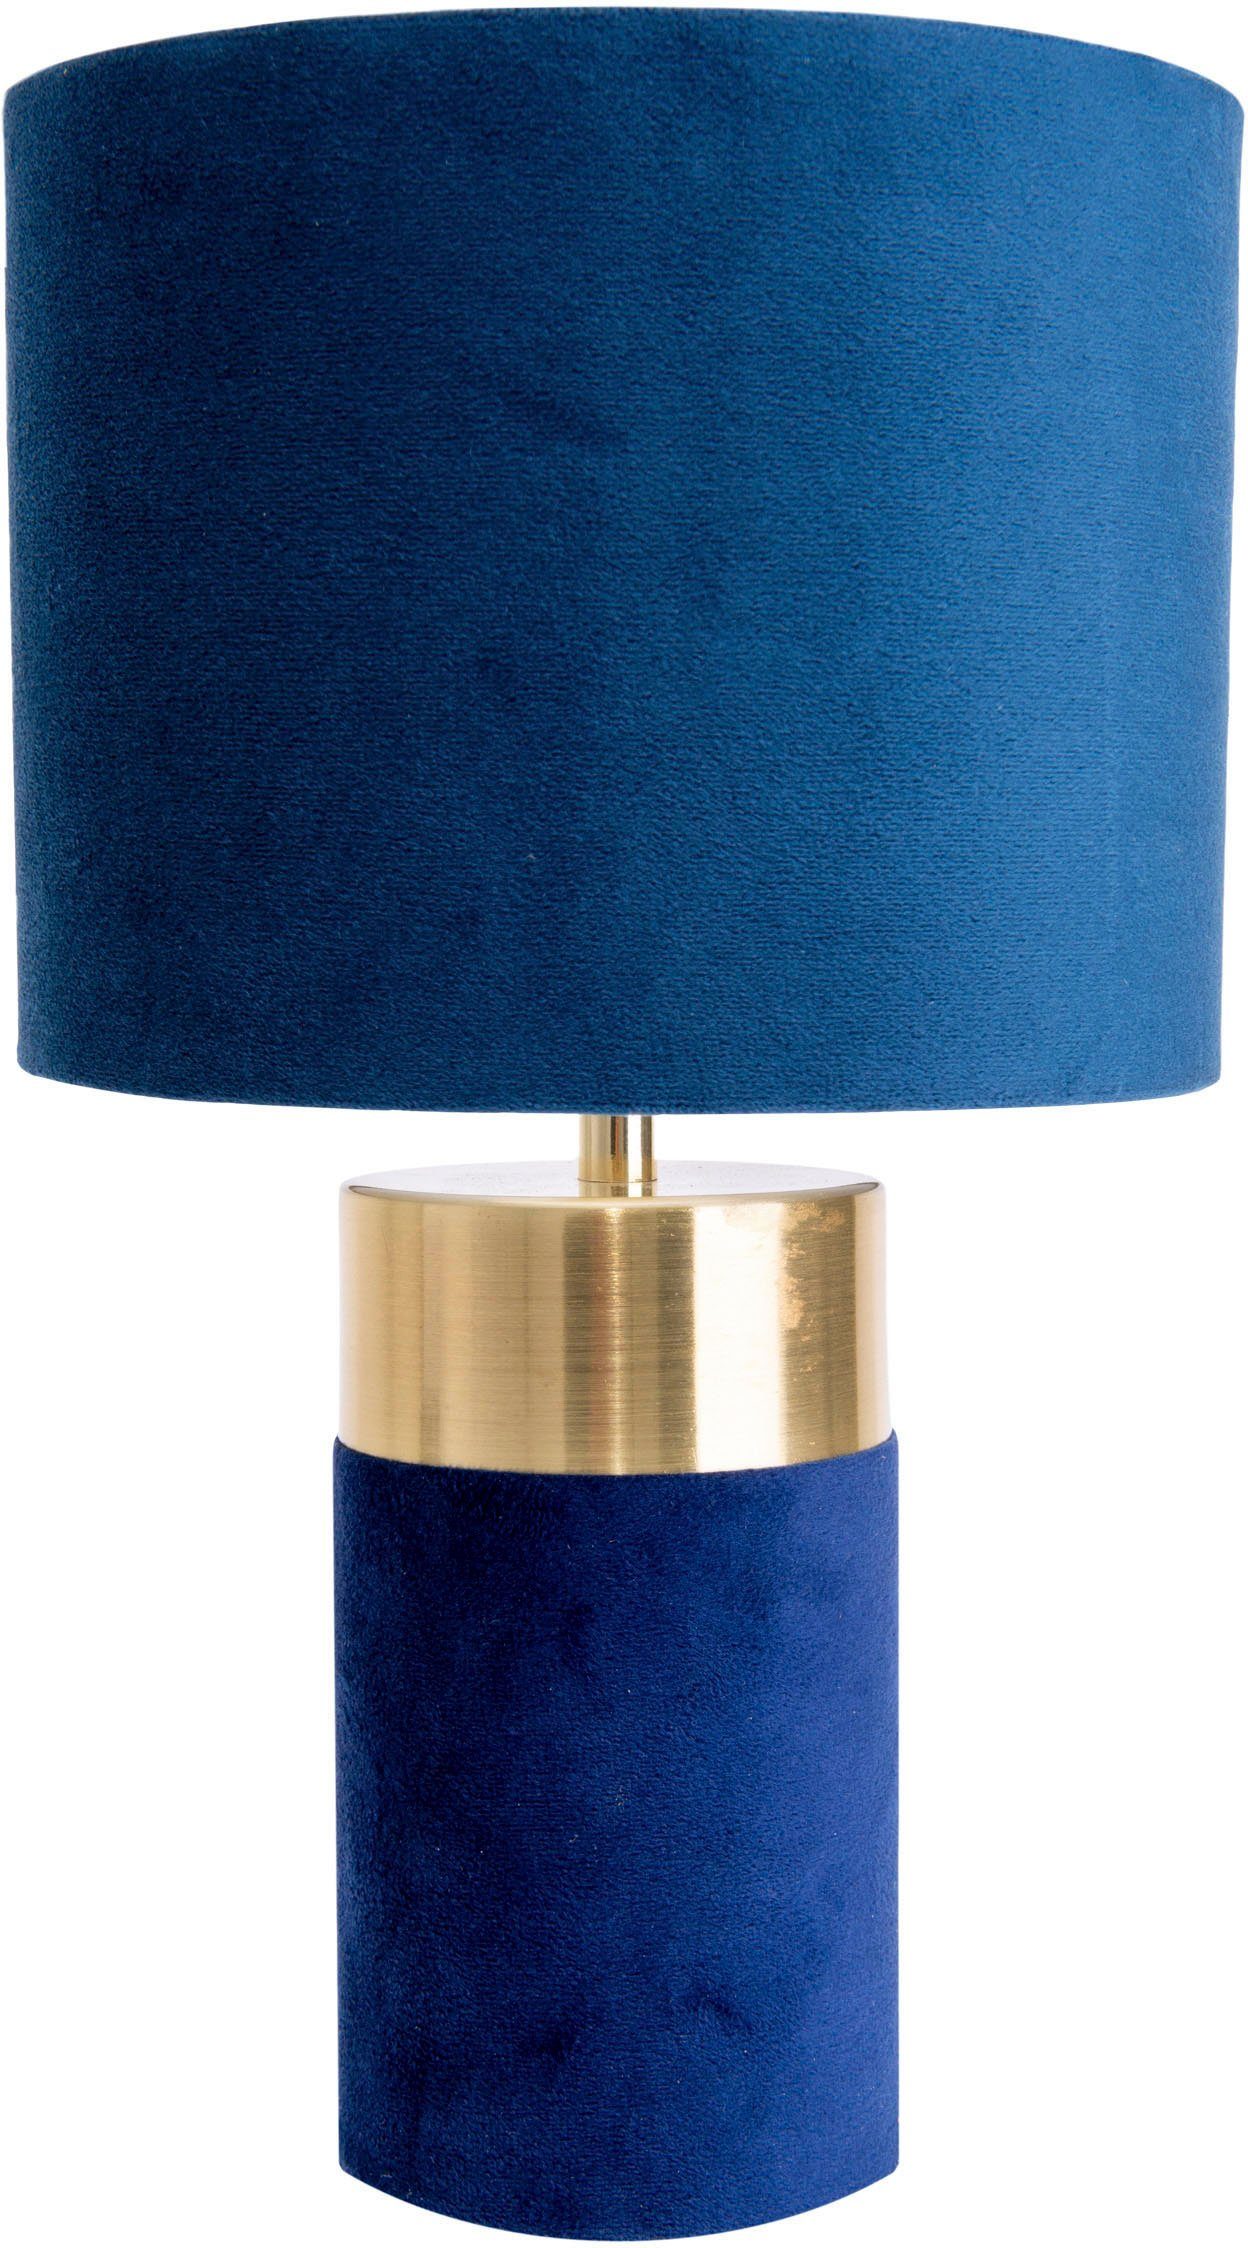 150cm Zuleitung Fuß blau, 32cm, Textilschirm Leuchtmittel, 1xE14, ohne Bordo, gold, näve Tischleuchte Höhe blau